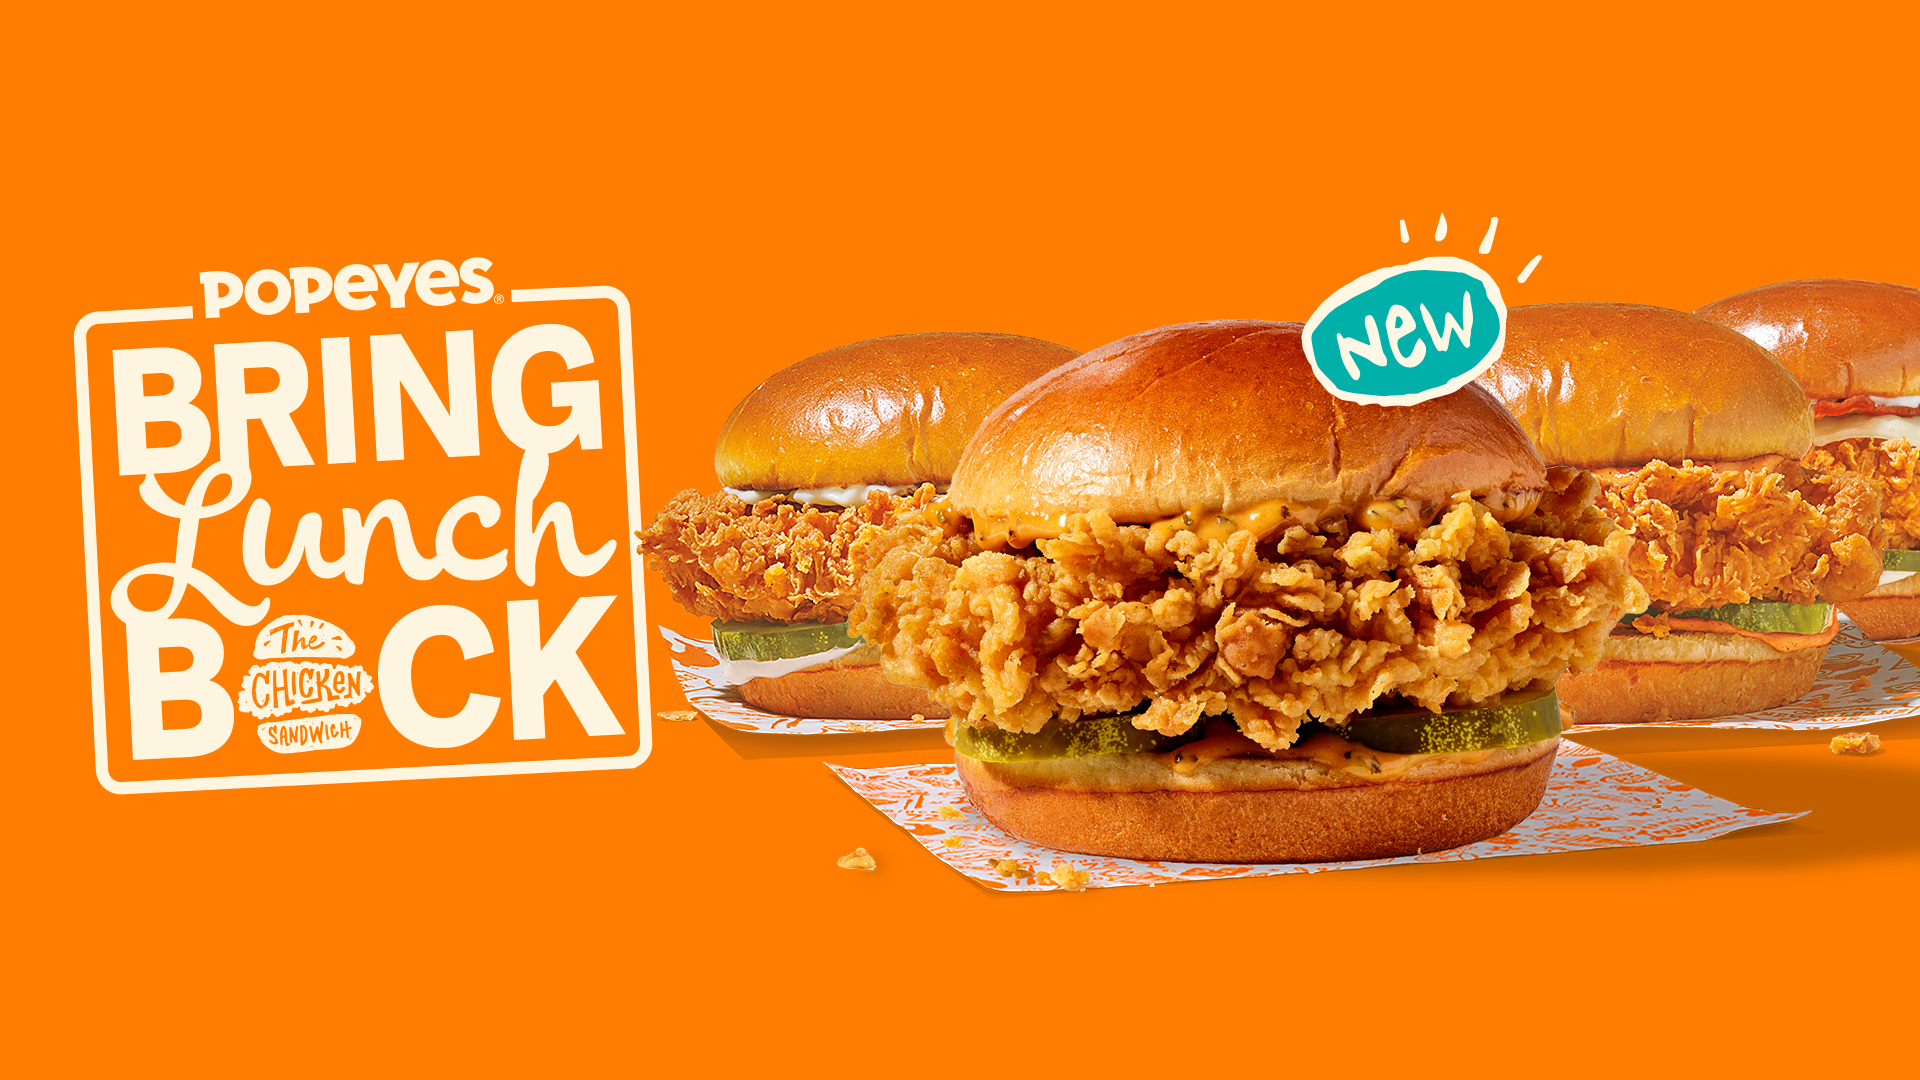 Popeyes launches new Golden BBQ Chicken Sandwich